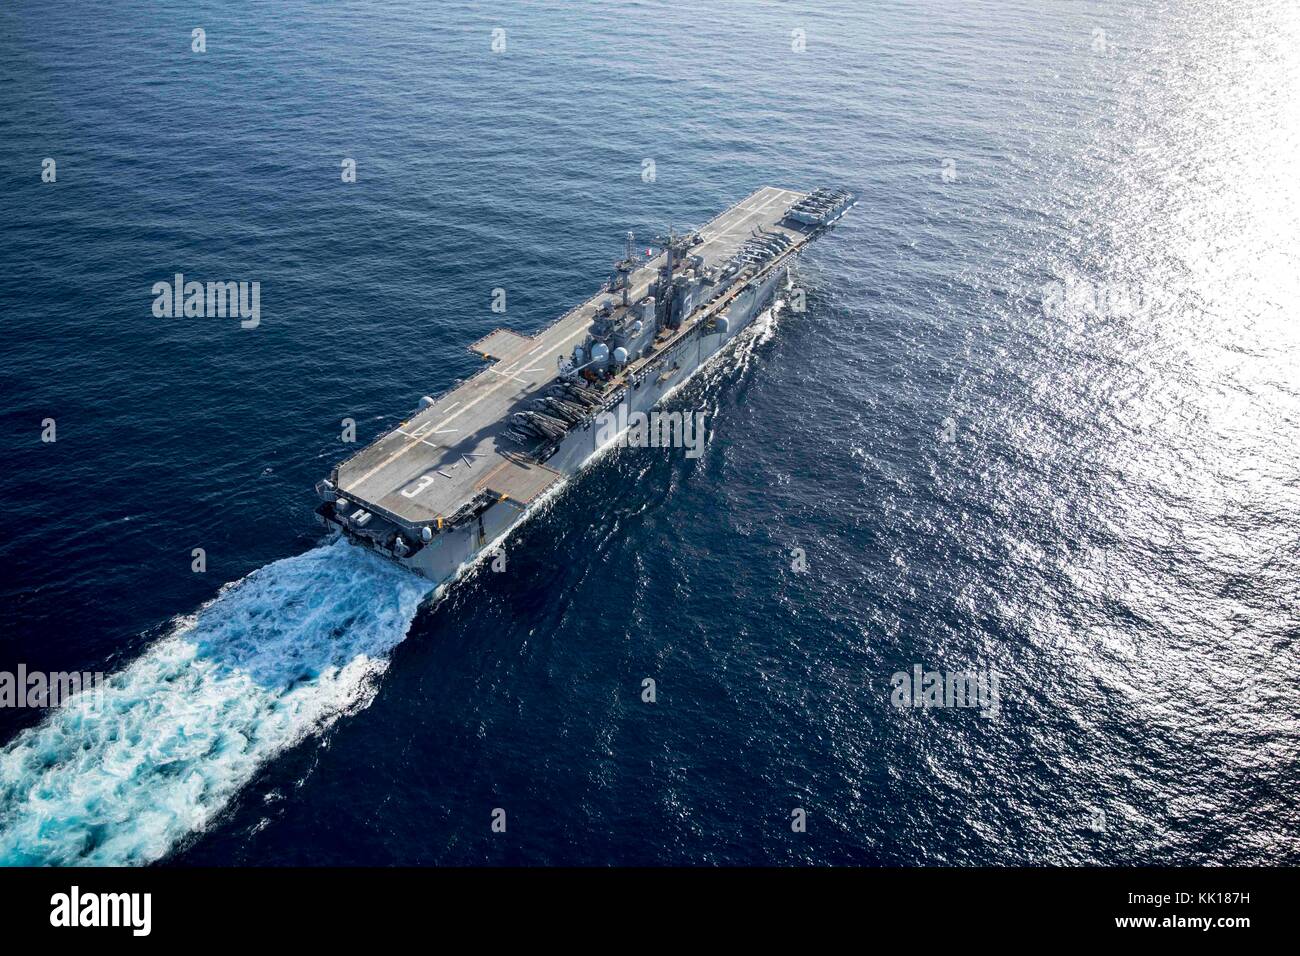 Die US-Marine Wasp-Klasse amphibisches Schiff USS Kearsarge parow unterwegs 19. September 2017 im karibischen Meer. Die USS Kearsarge ist en route mit Hilfsmaßnahmen in den Wirbelsturm Irma zu helfen. (Foto: MCS3 dana d. legg über planetpix) Stockfoto